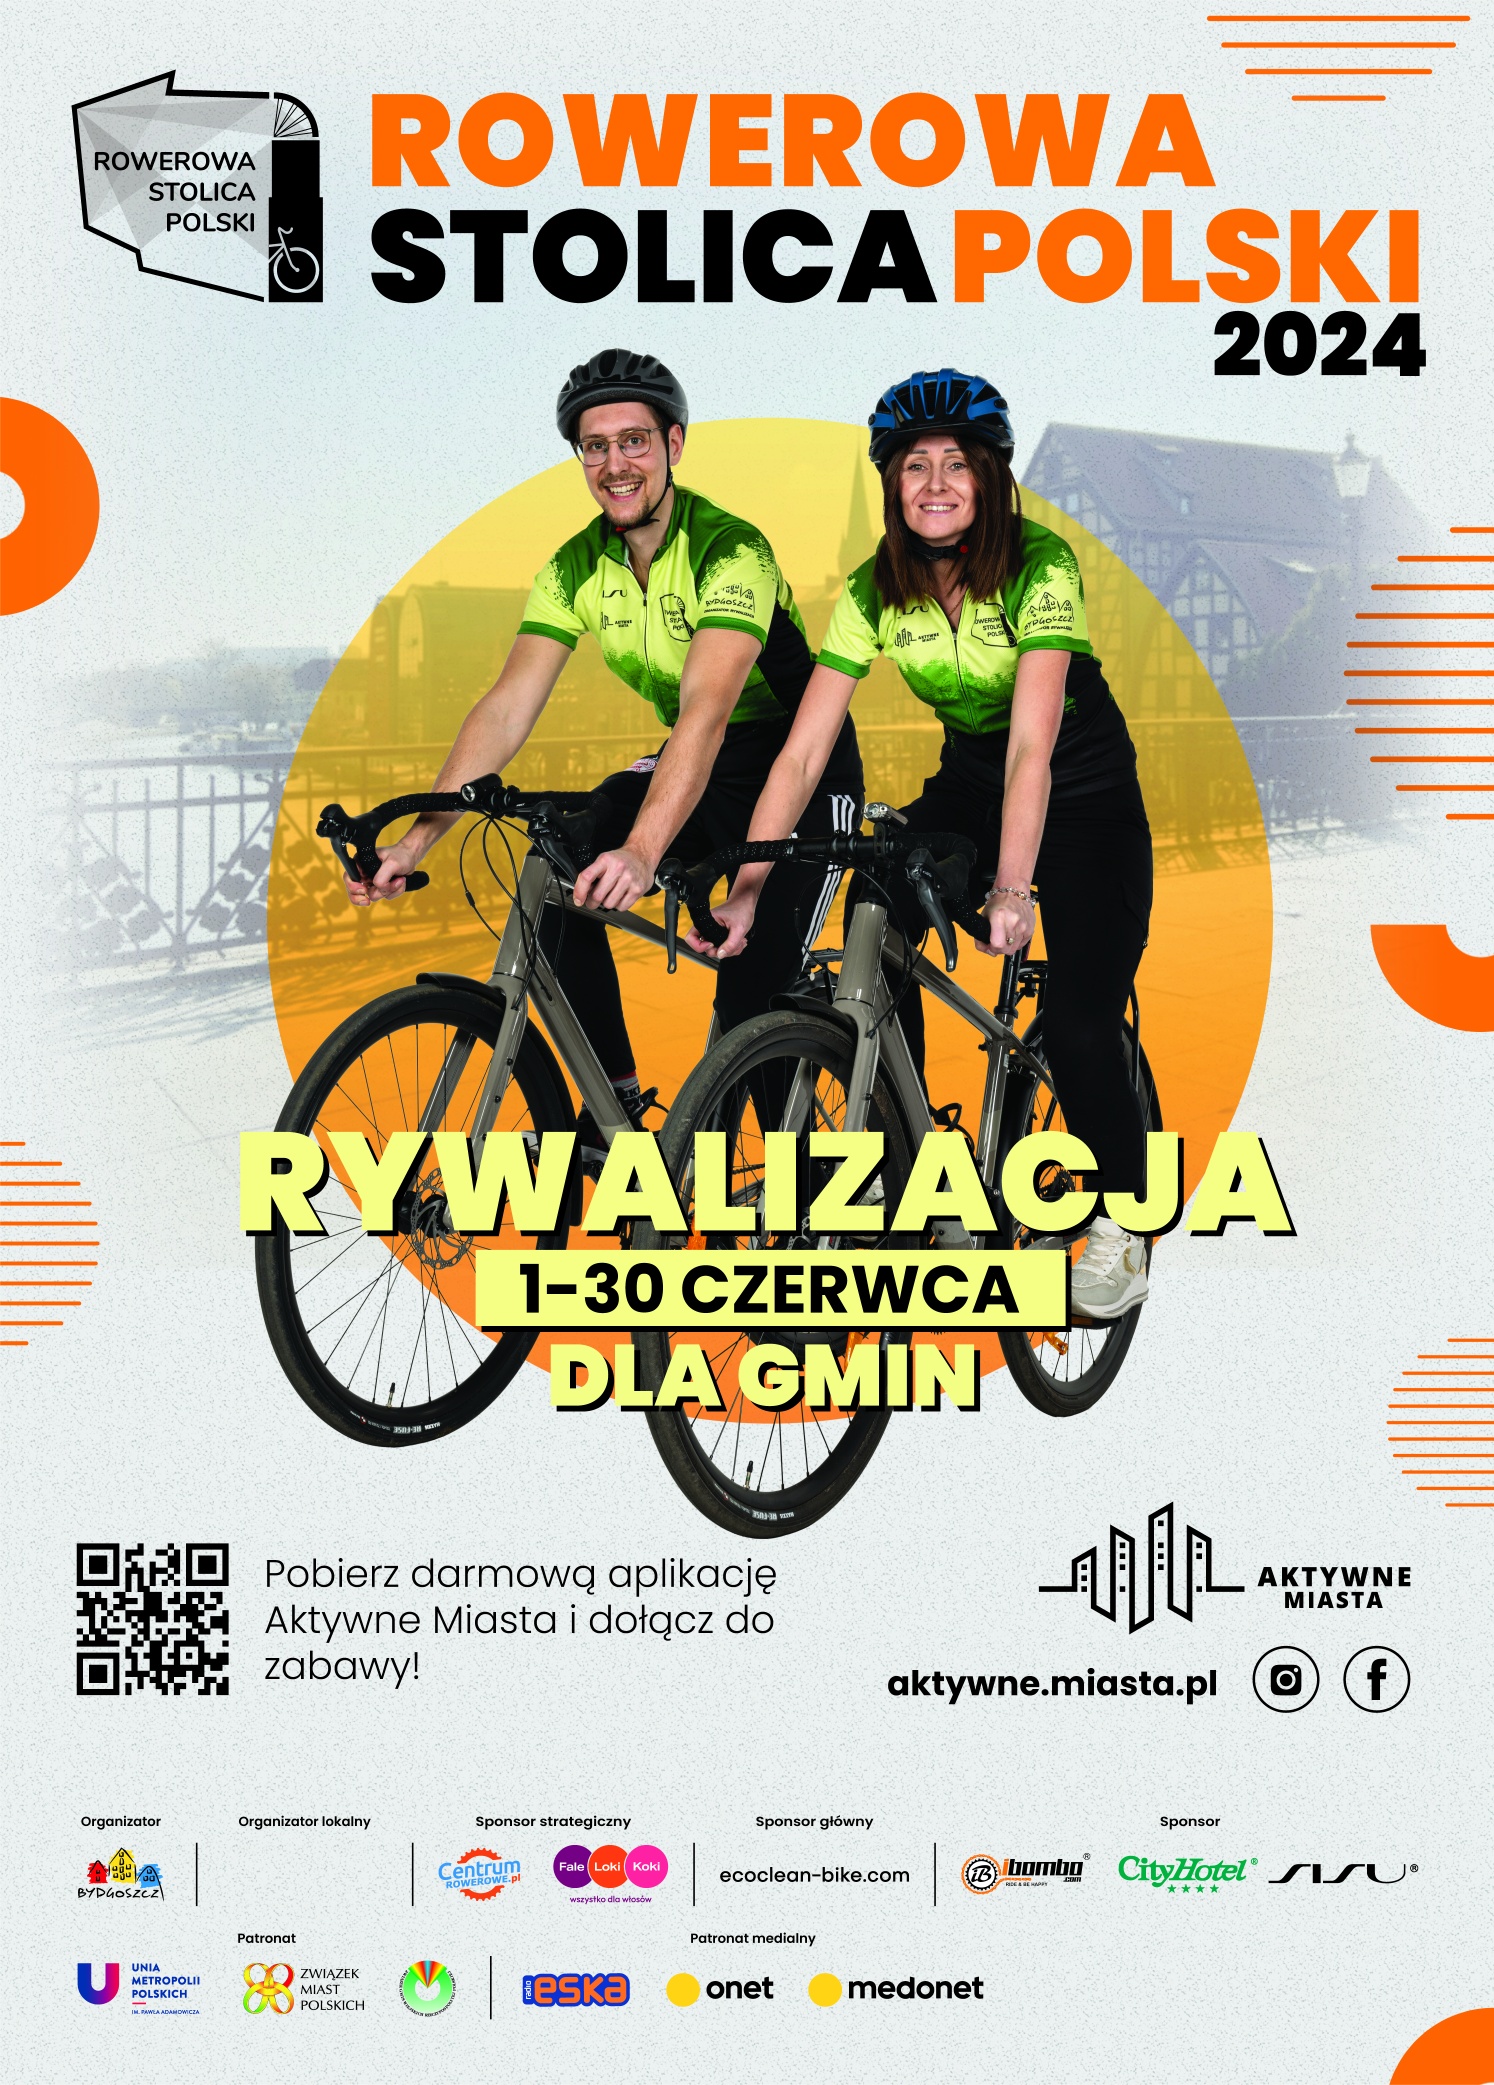 Walczymy o tytuł Rowerowej Stolicy Roku! Od 1 czerwca 2024 r. mieszkańcy Halinowa mogą kręcić kilometry w naszej gminie, biorąc udział w czerwcowej rywalizacji międzygminnej! W tym roku po raz pierwszy startujemy w ogólnopolskiej akcji rowerowej.